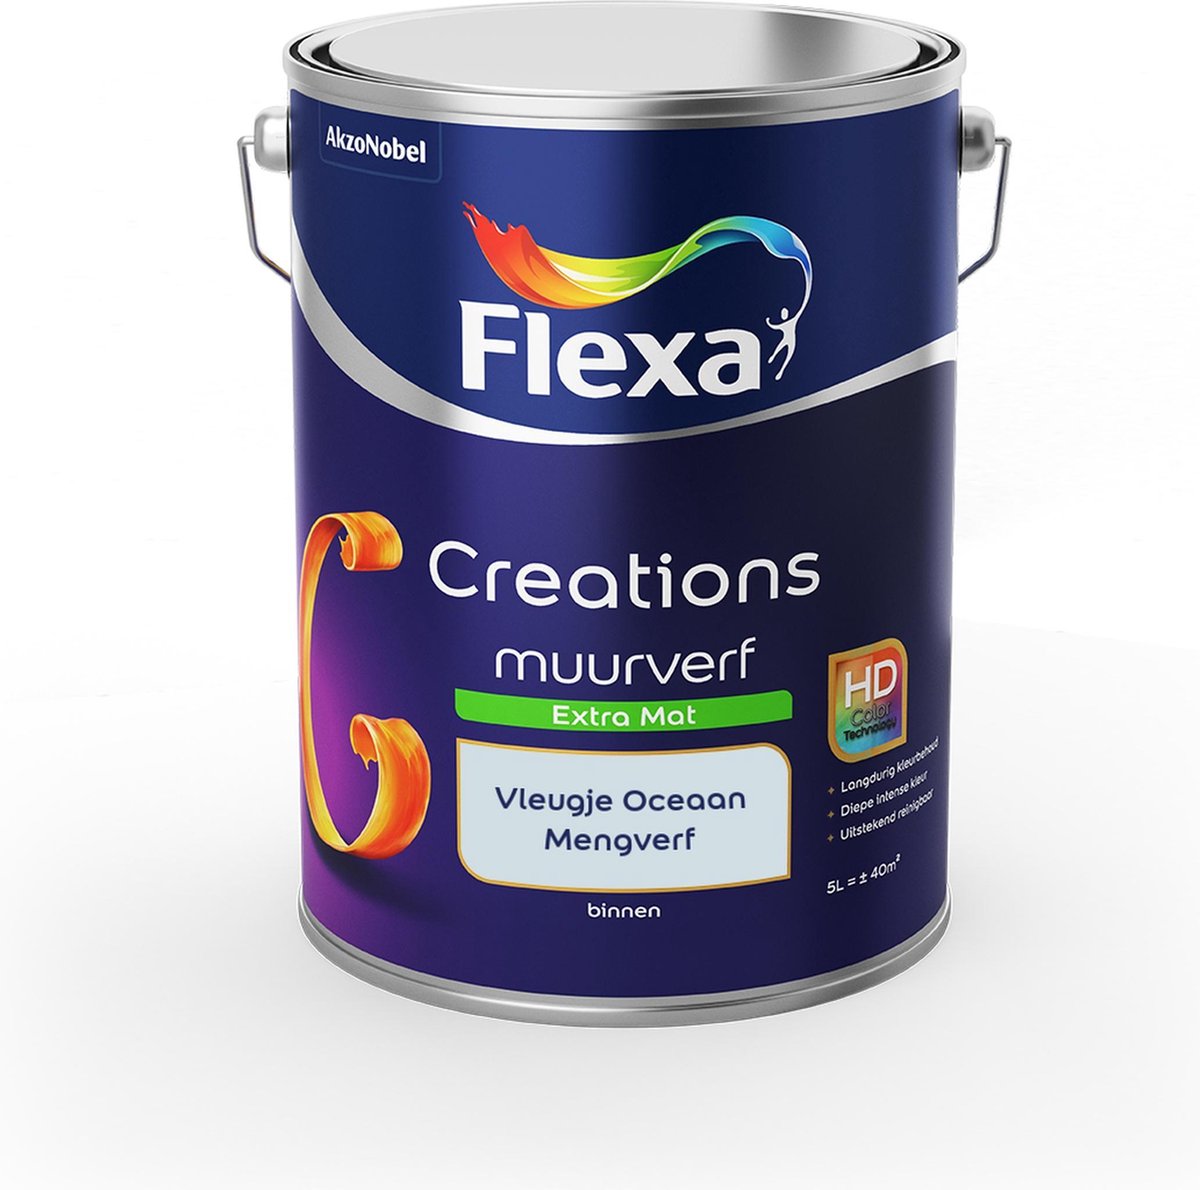 Flexa Creations Muurverf - Extra Mat - Mengkleuren Collectie - Vleugje Oceaan - 5 liter